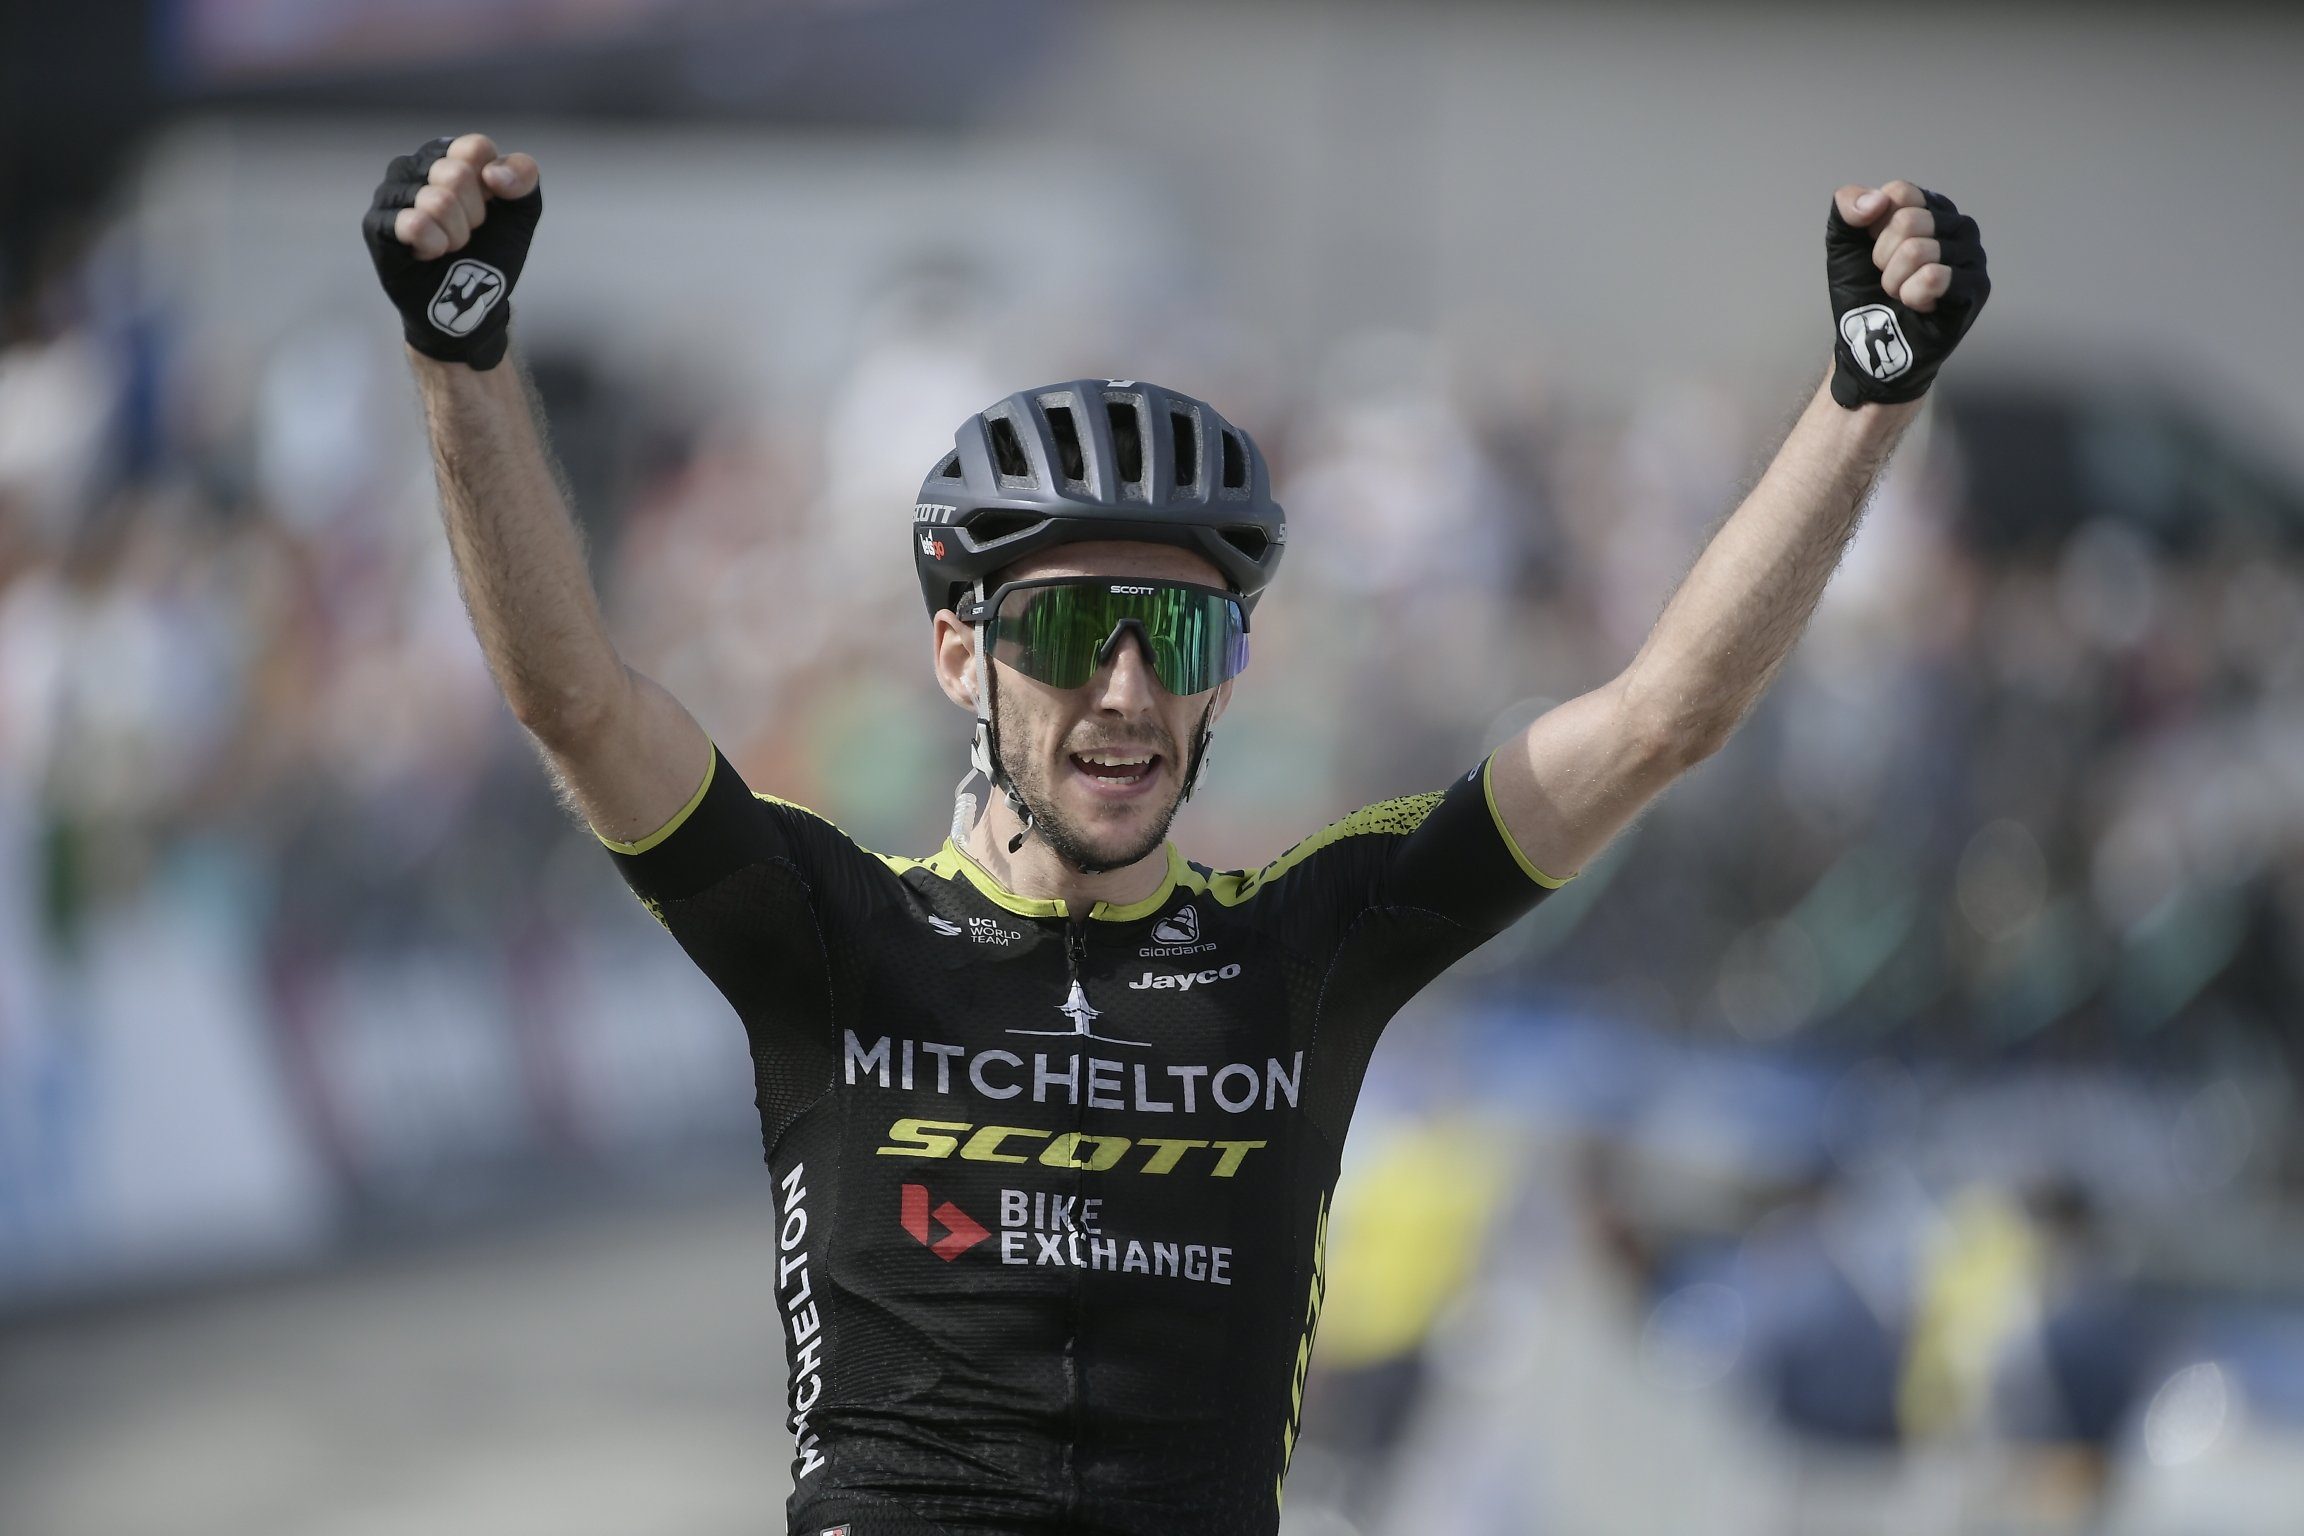 Саймон Йейтс выиграл этап и перехватил майку лидера велогонки «Тиррено — Адриатико»